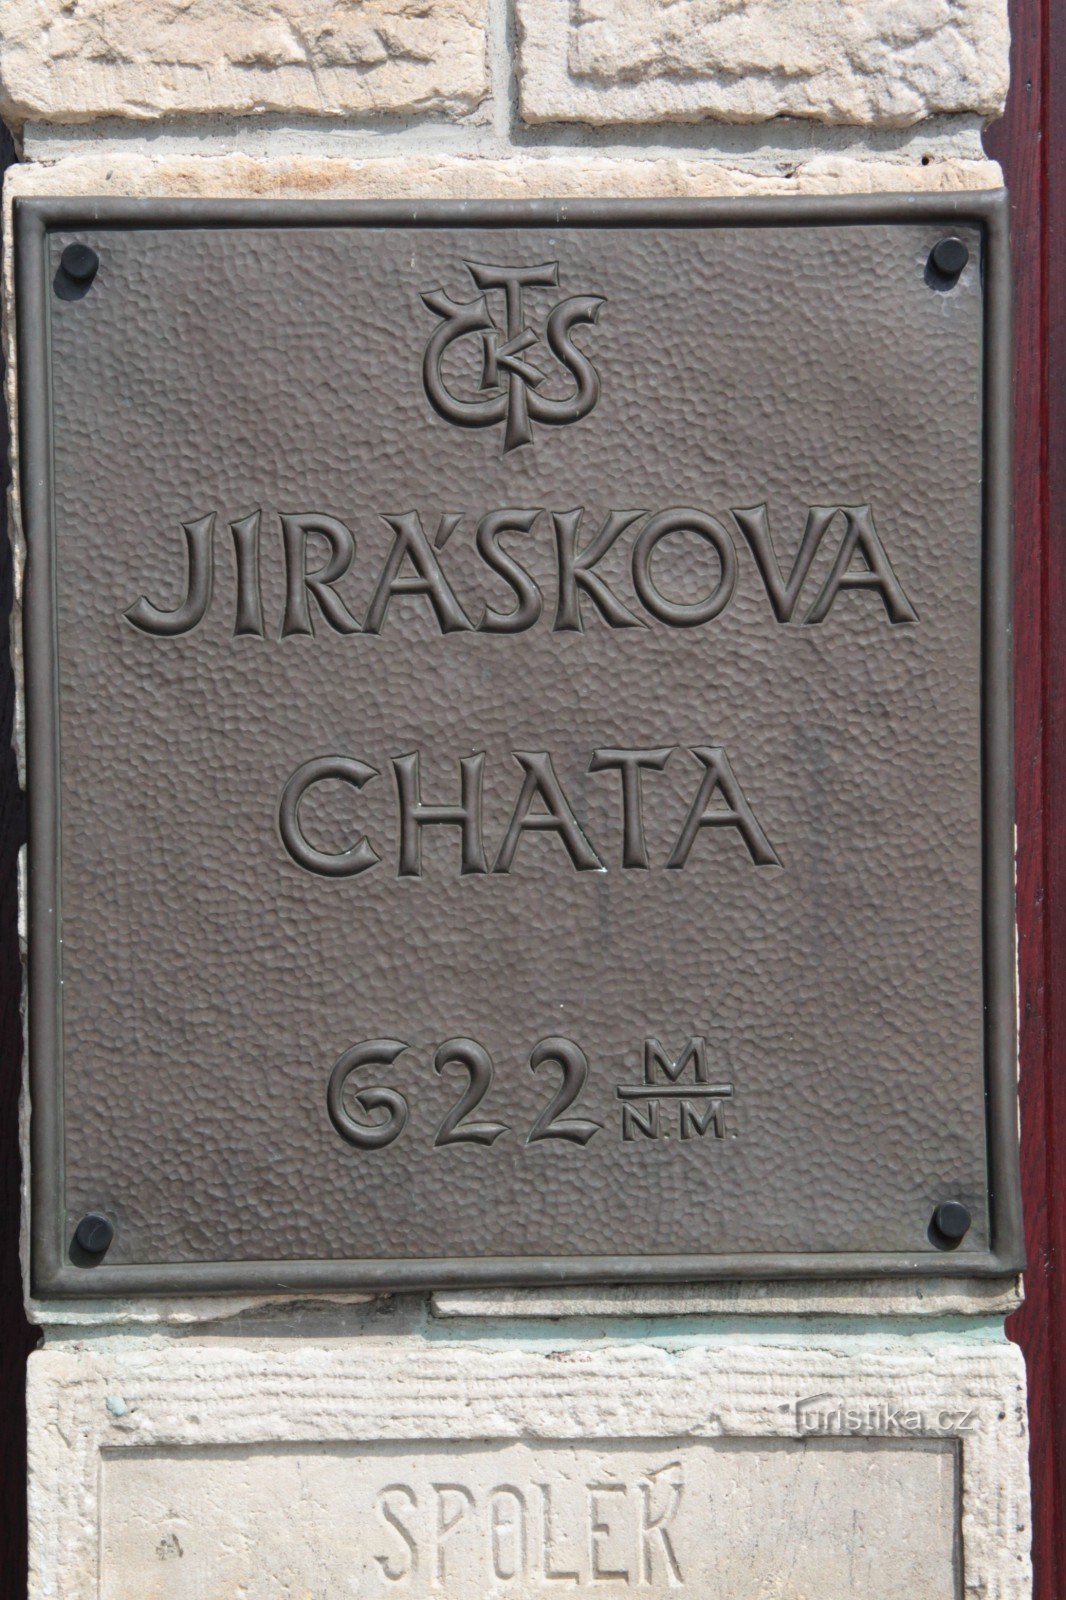 Signpost Jiráskova chata - Dobrošov